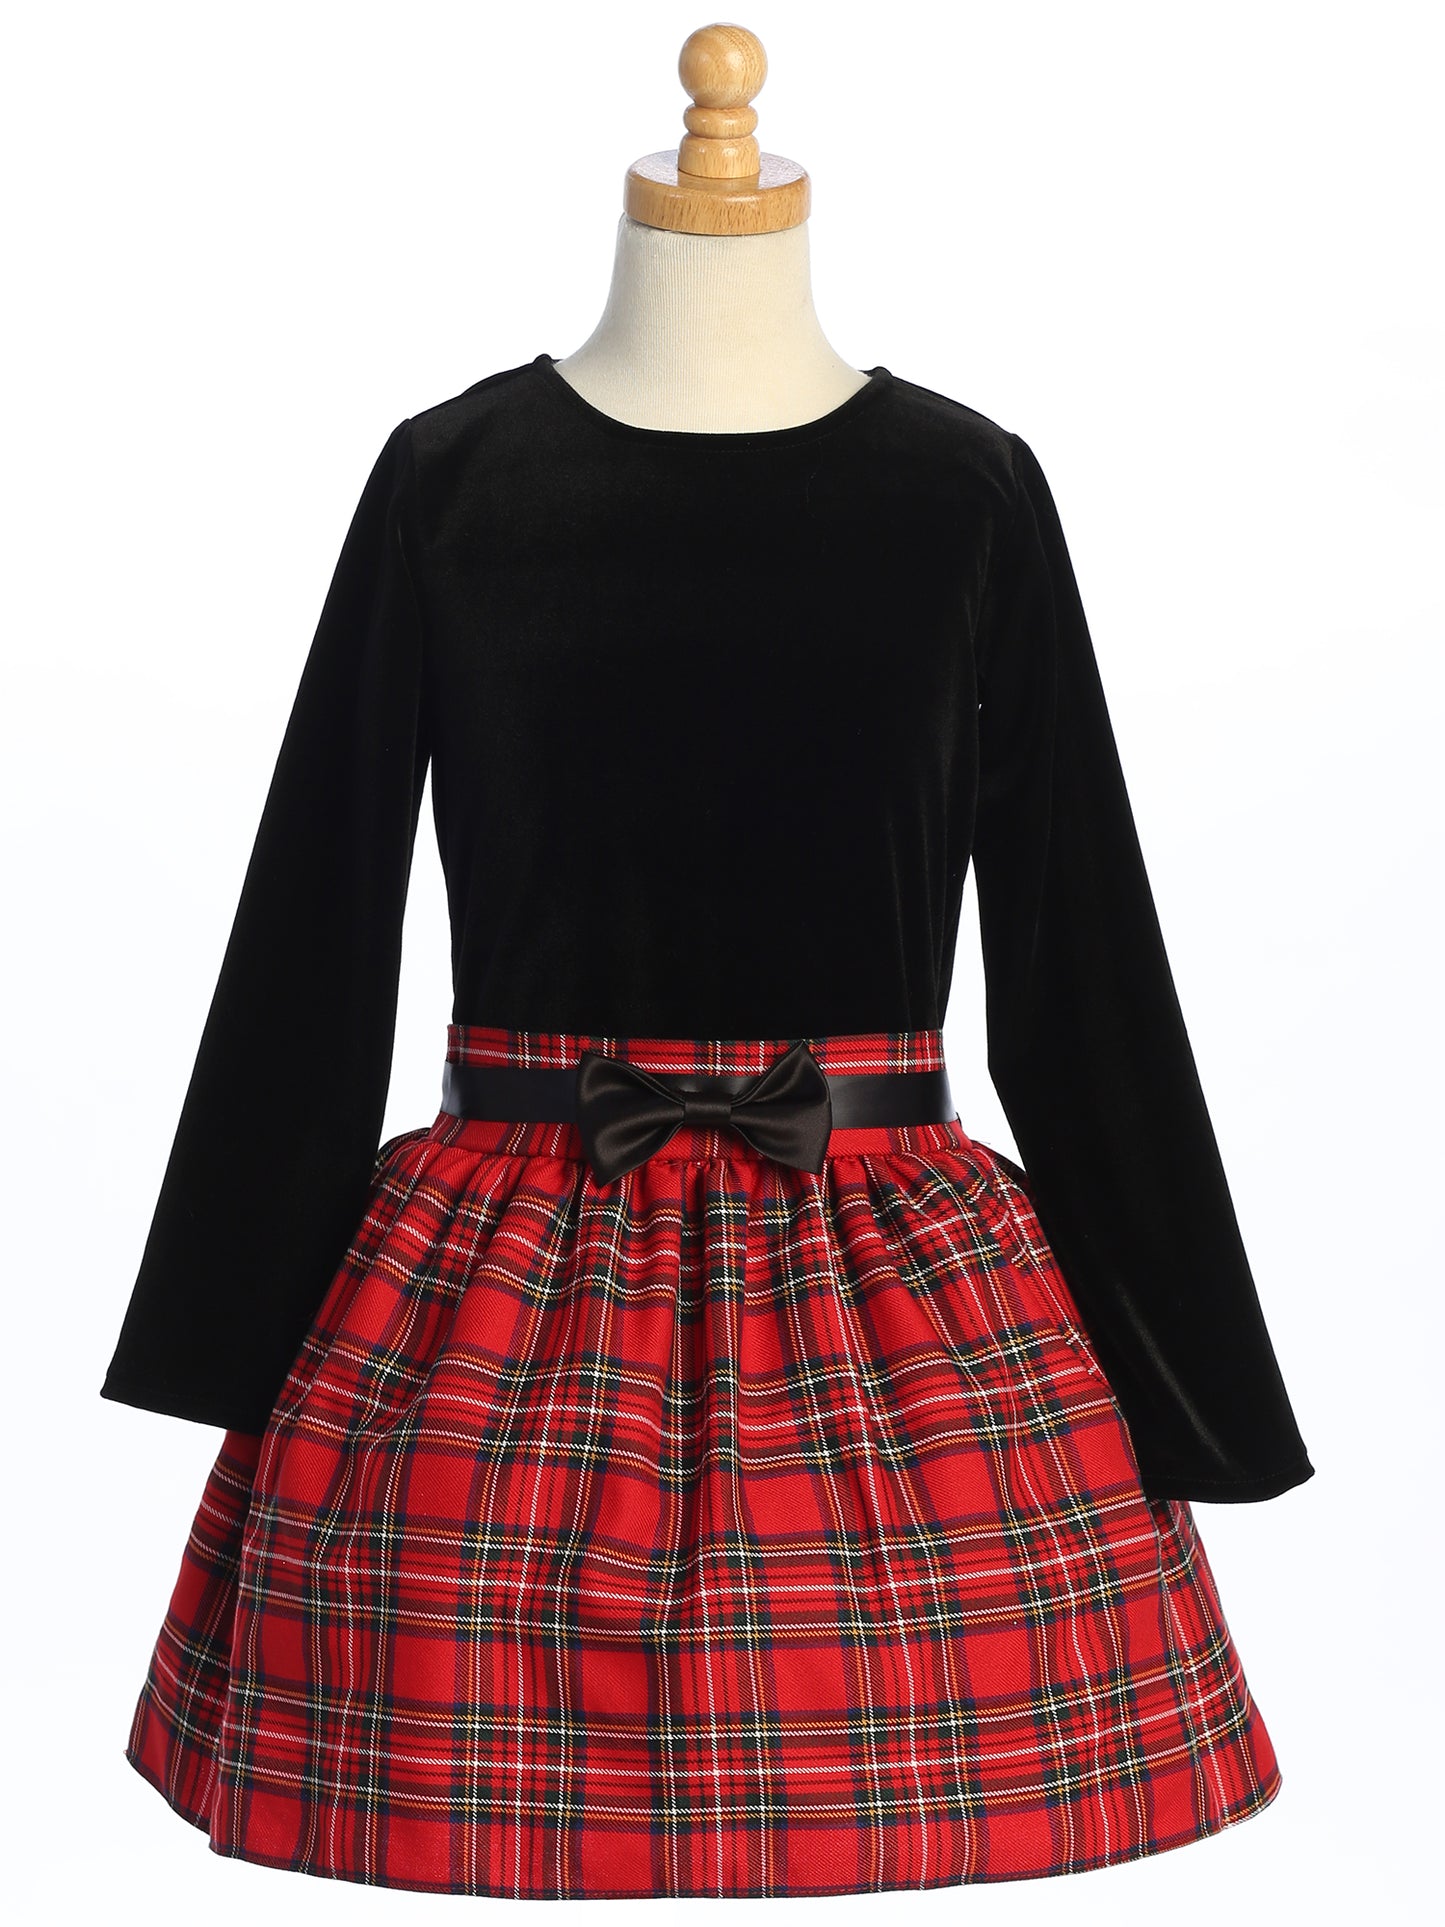 Girls Black Velvet Holiday Dress with Red and Black Plaid Skirt ...